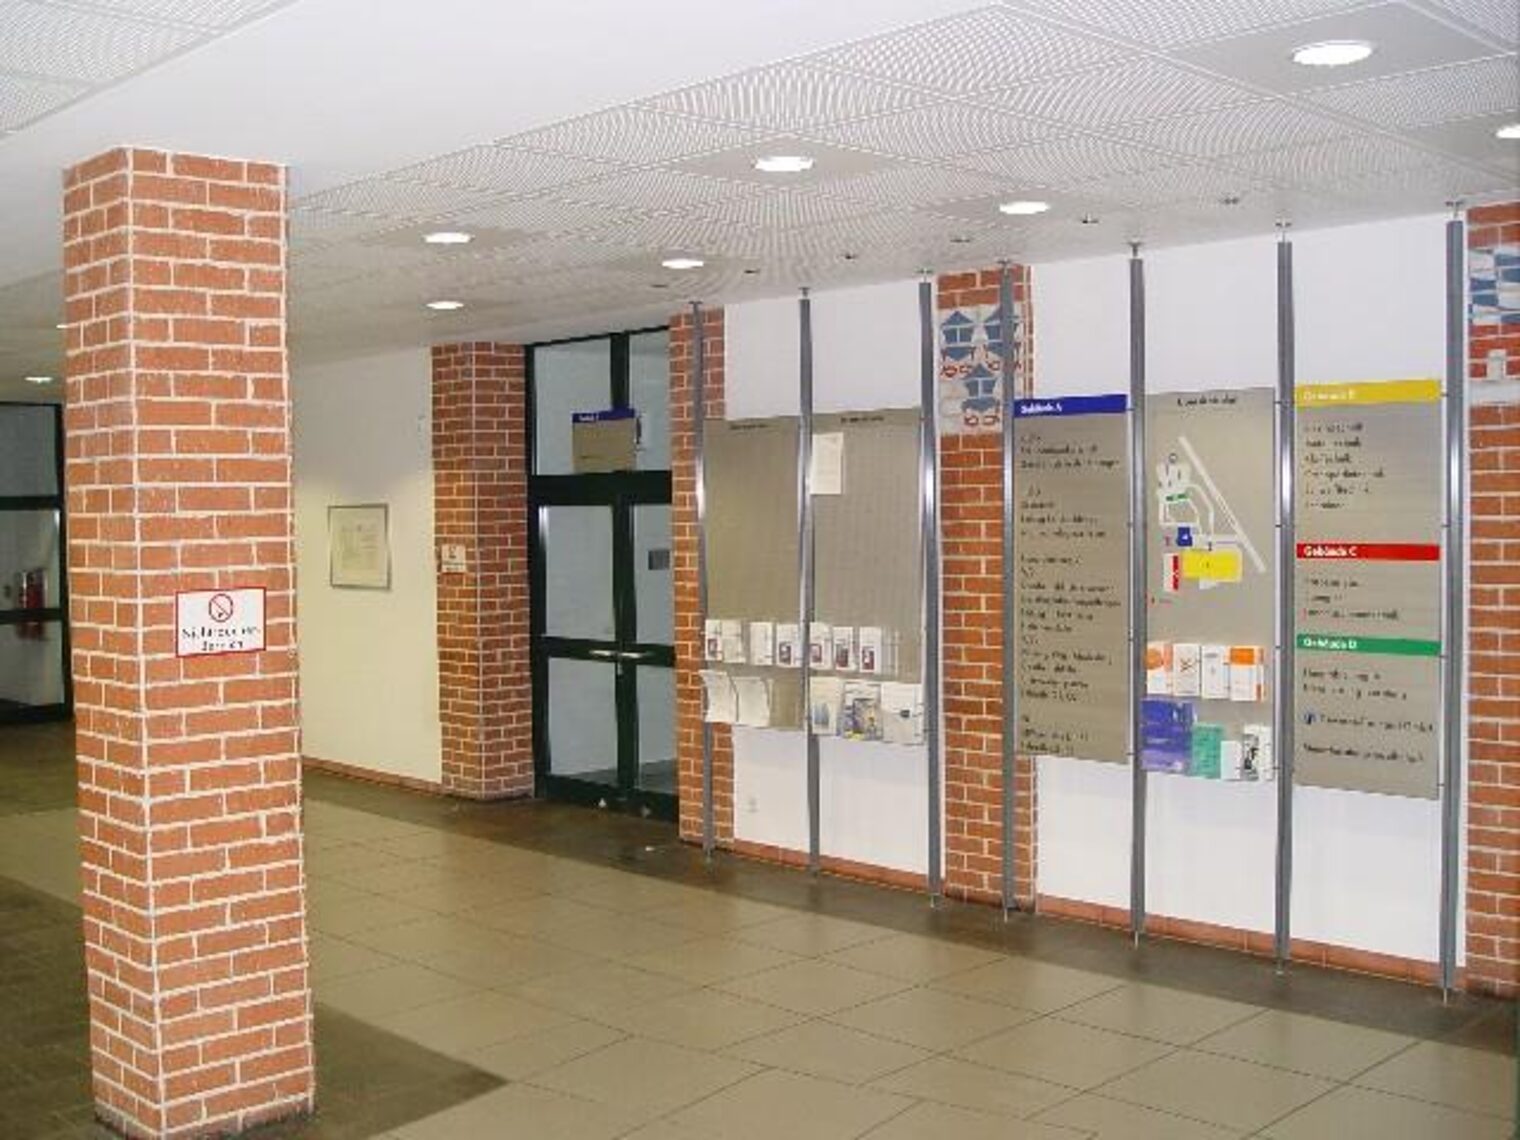 Informationstafeln in der Eingangshalle.